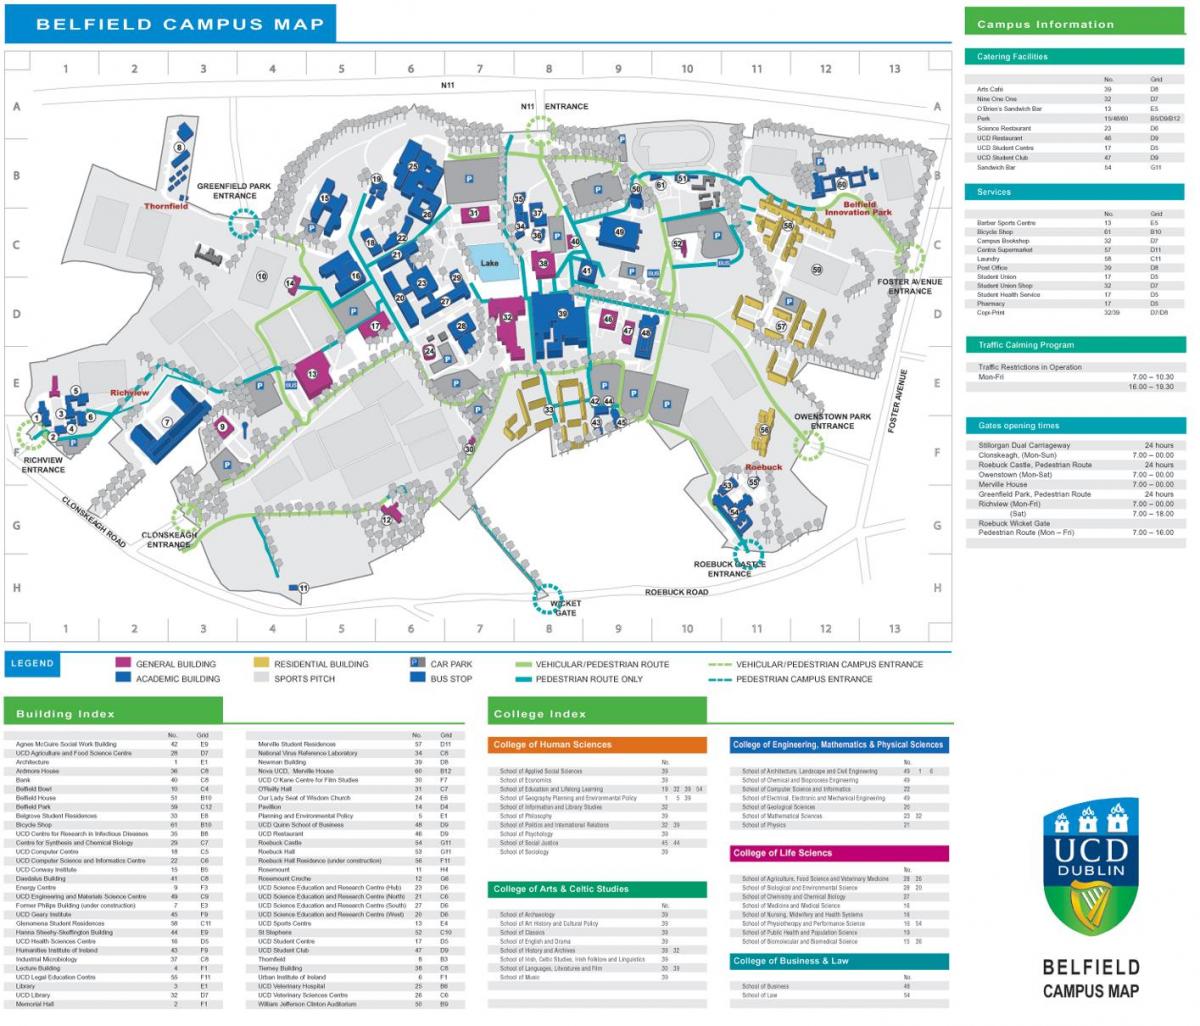 UCD डबलिन नक्शा